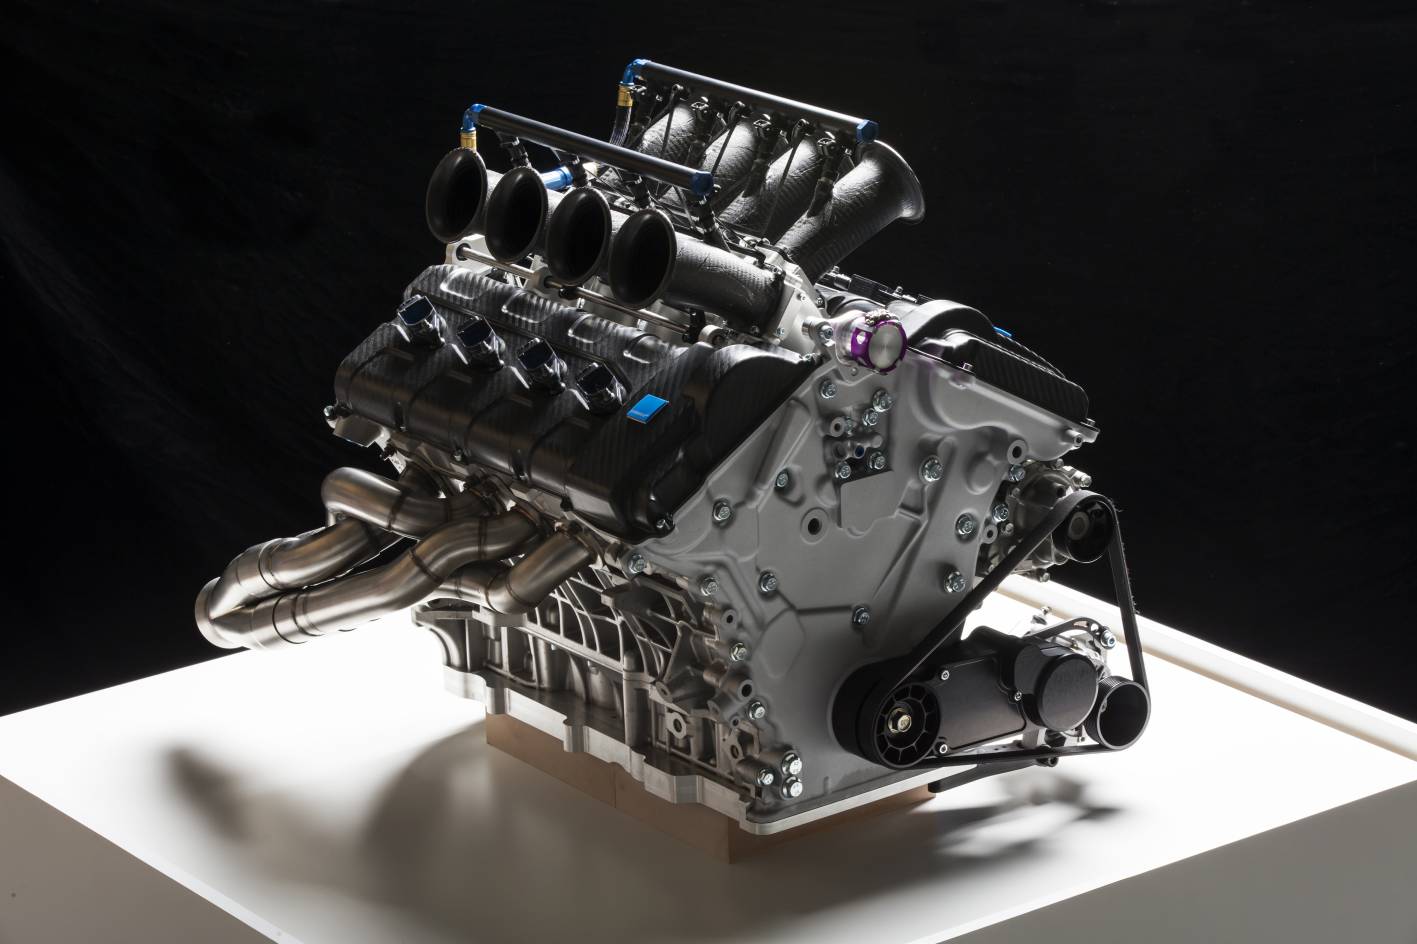 Volvo v8 engines